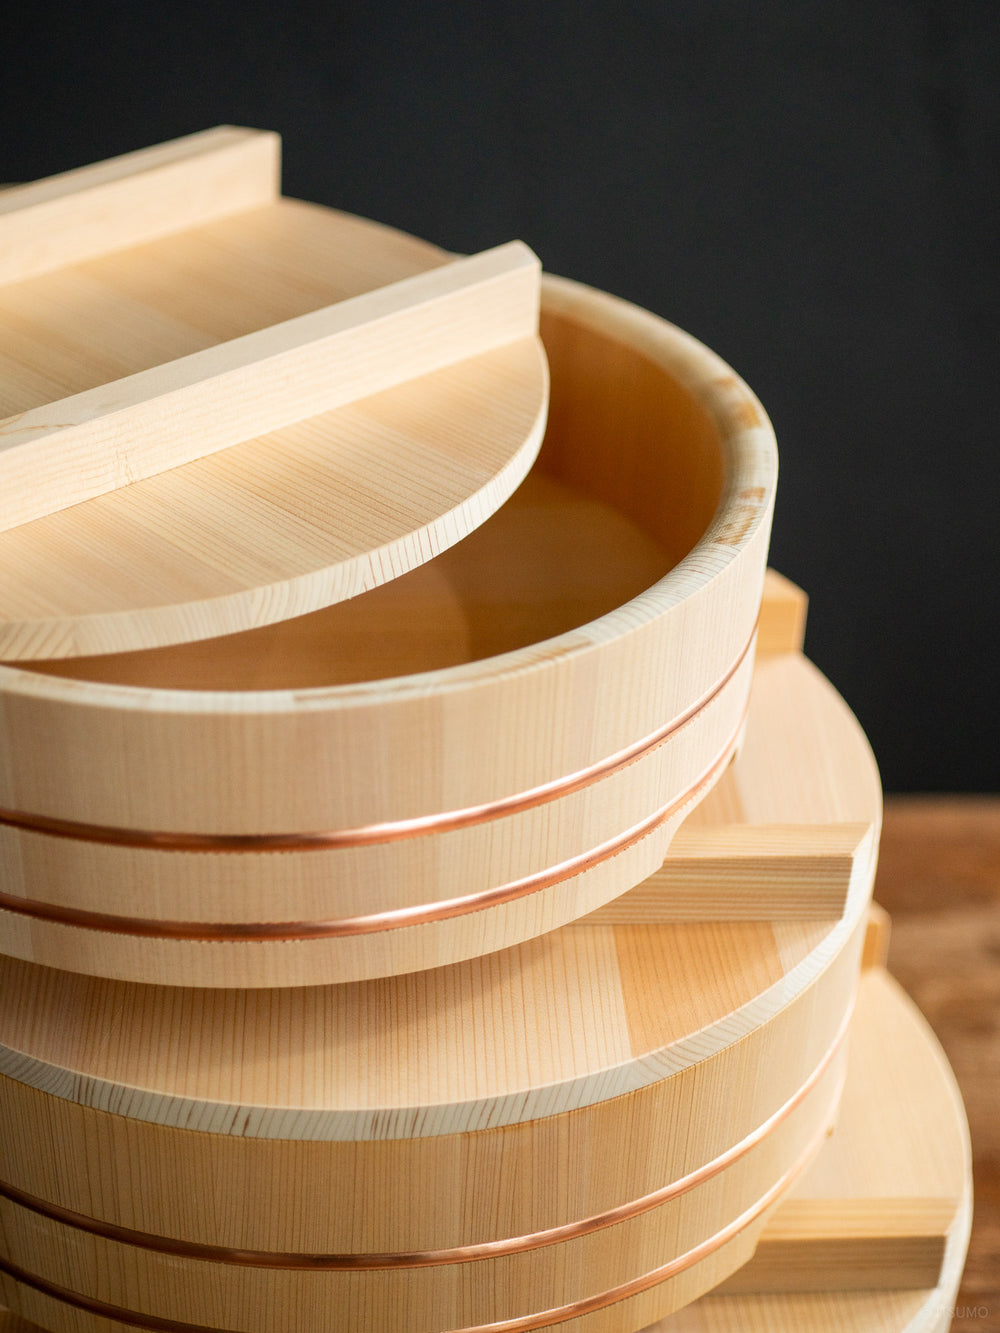 Close up wood grain detail on the Azmaya kiso sawara sushi rice mixing bowl